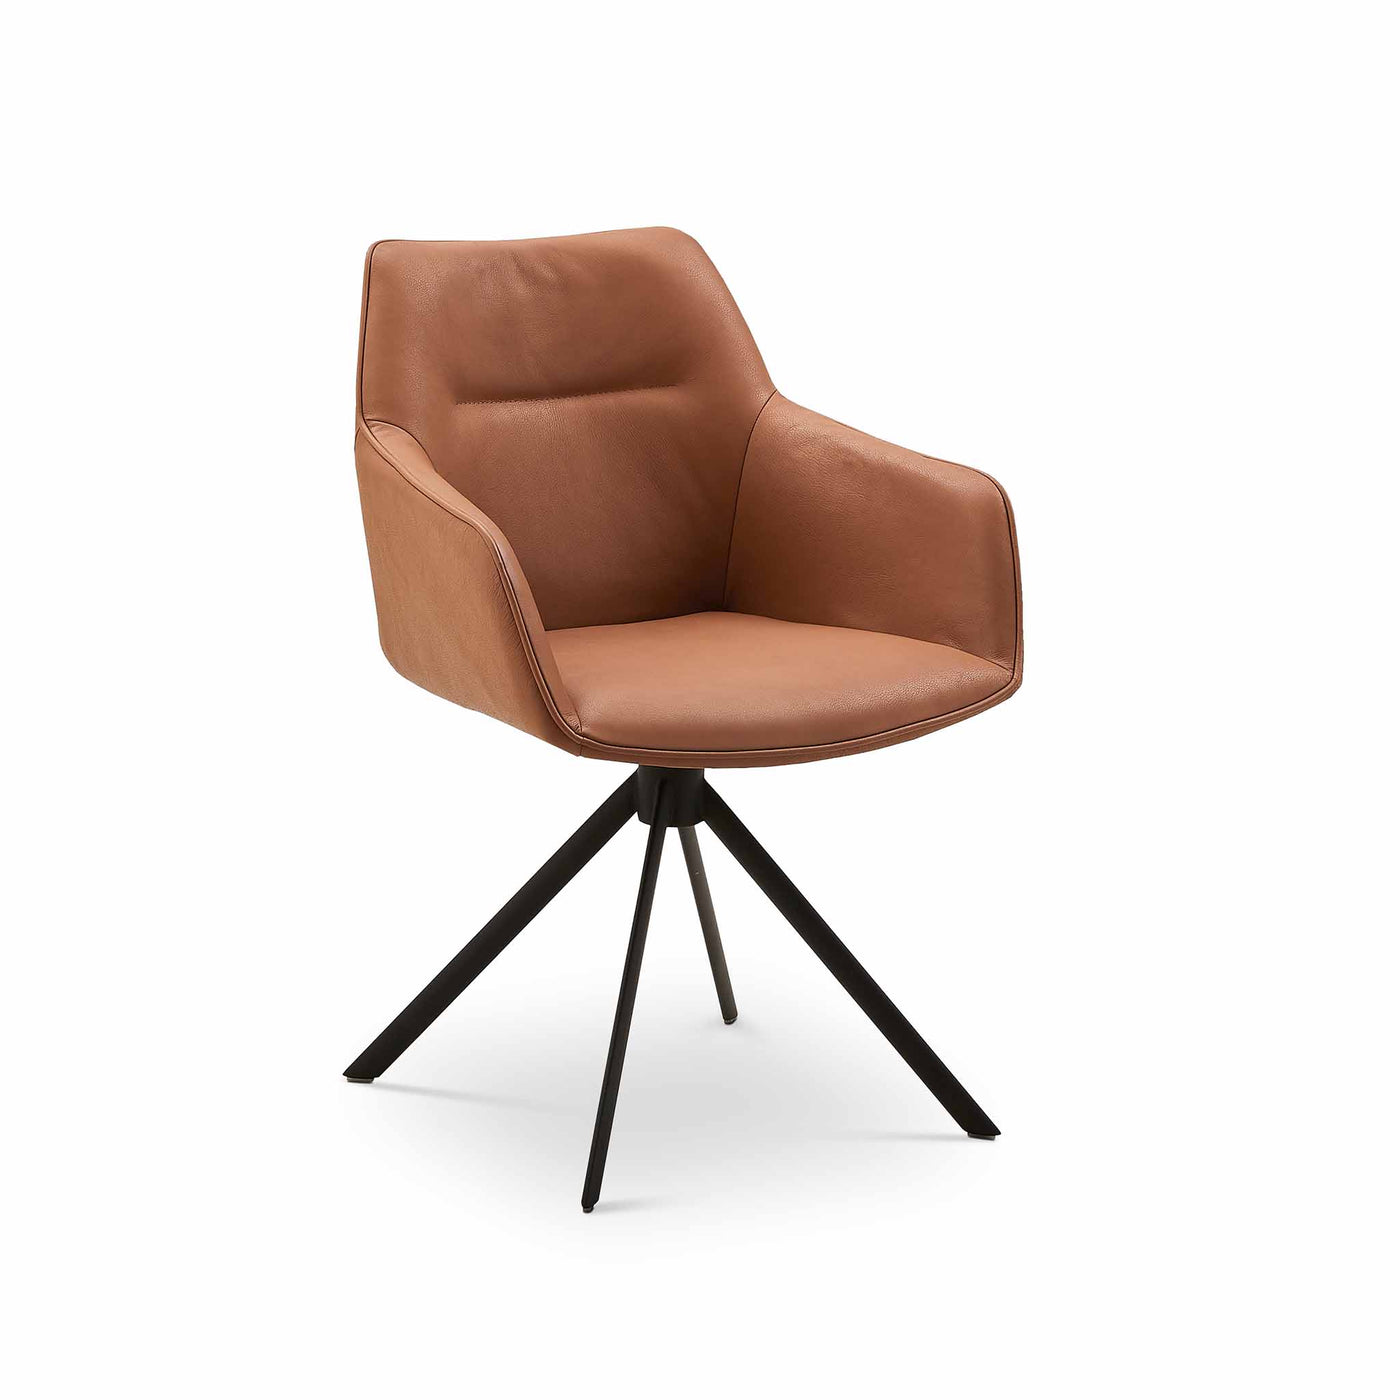 Bestseat spisebordsstol fra Casø Furniture i cognac farvet læder og med sorte metalben